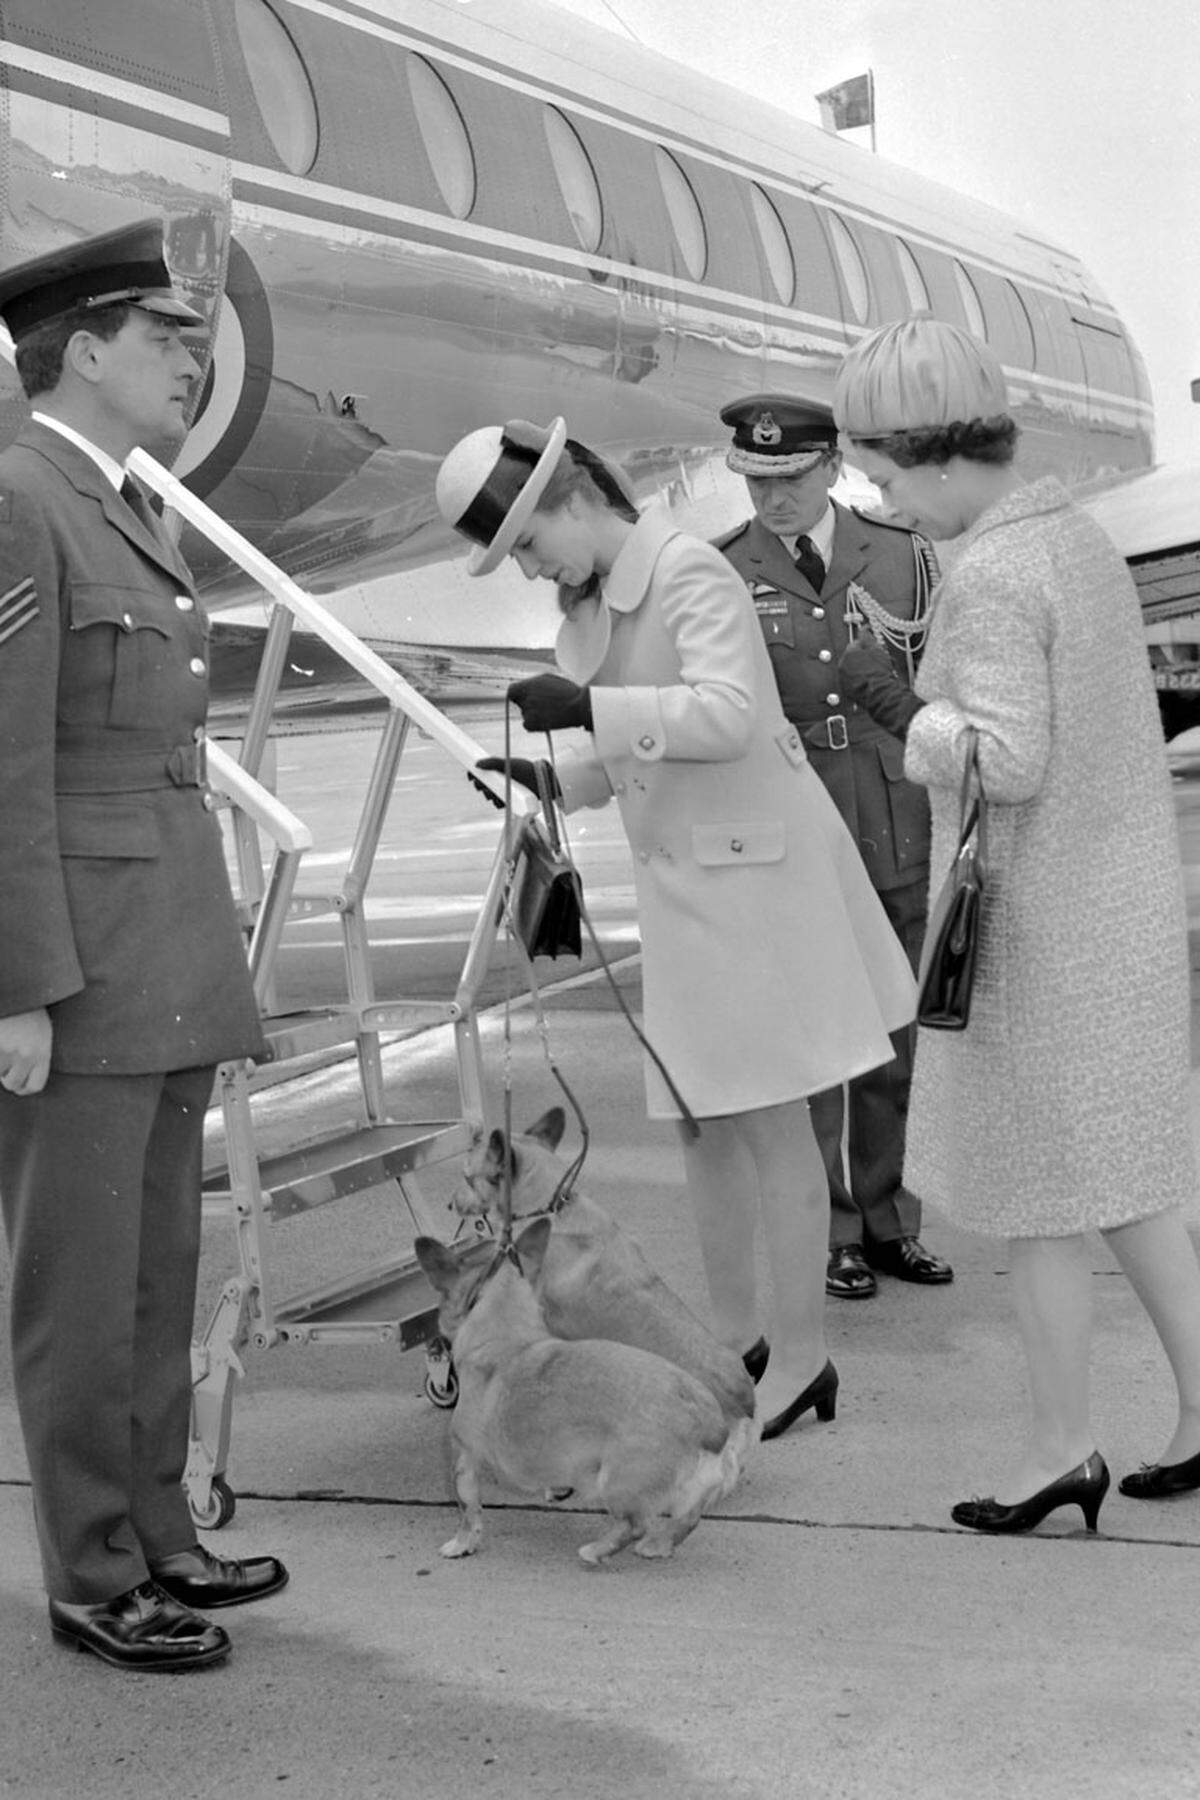 Auch auf Reisen der Queen müssen die Hunde immer dabei sein. So sind einige Bedienstete des Hauses exklusiv für die Betreuung der Corgis und Dorgis zuständig. "Nach dir": Queen Elizabeth und ihre Tochter Prinzessin Anne am Londoner Flughafen Heathrow, Mai 1969.